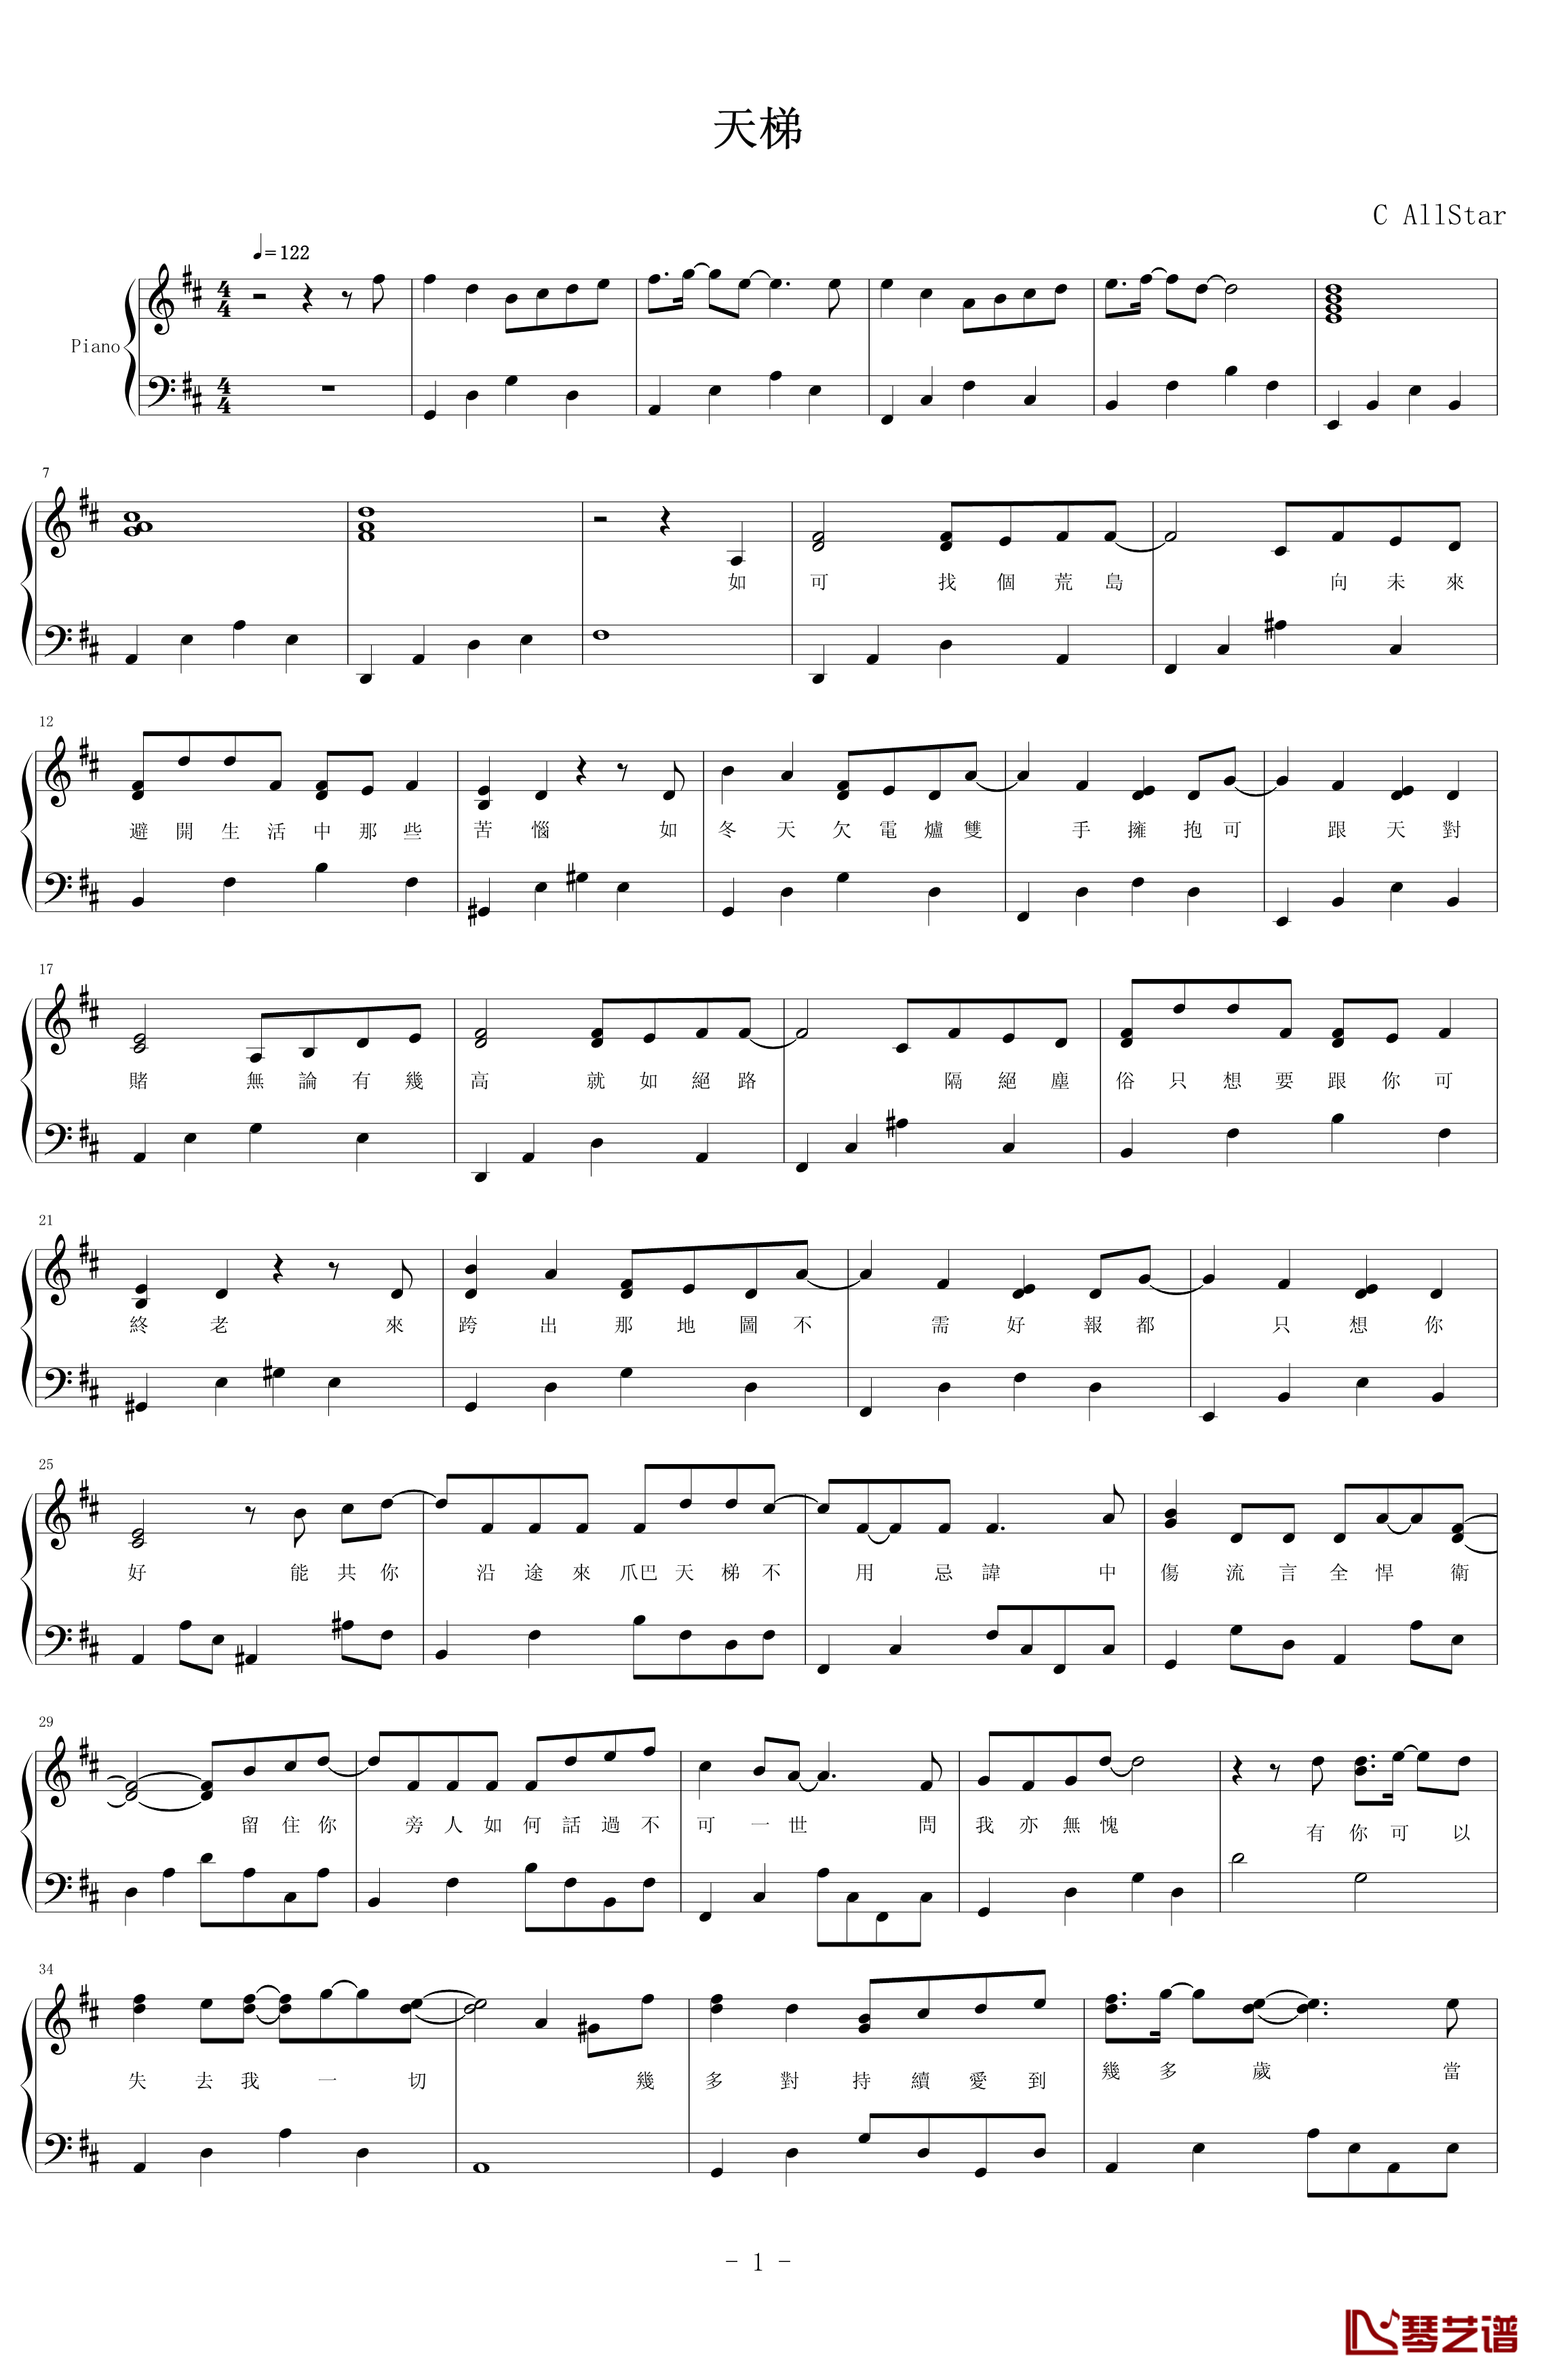 天梯钢琴谱-C AllStar1